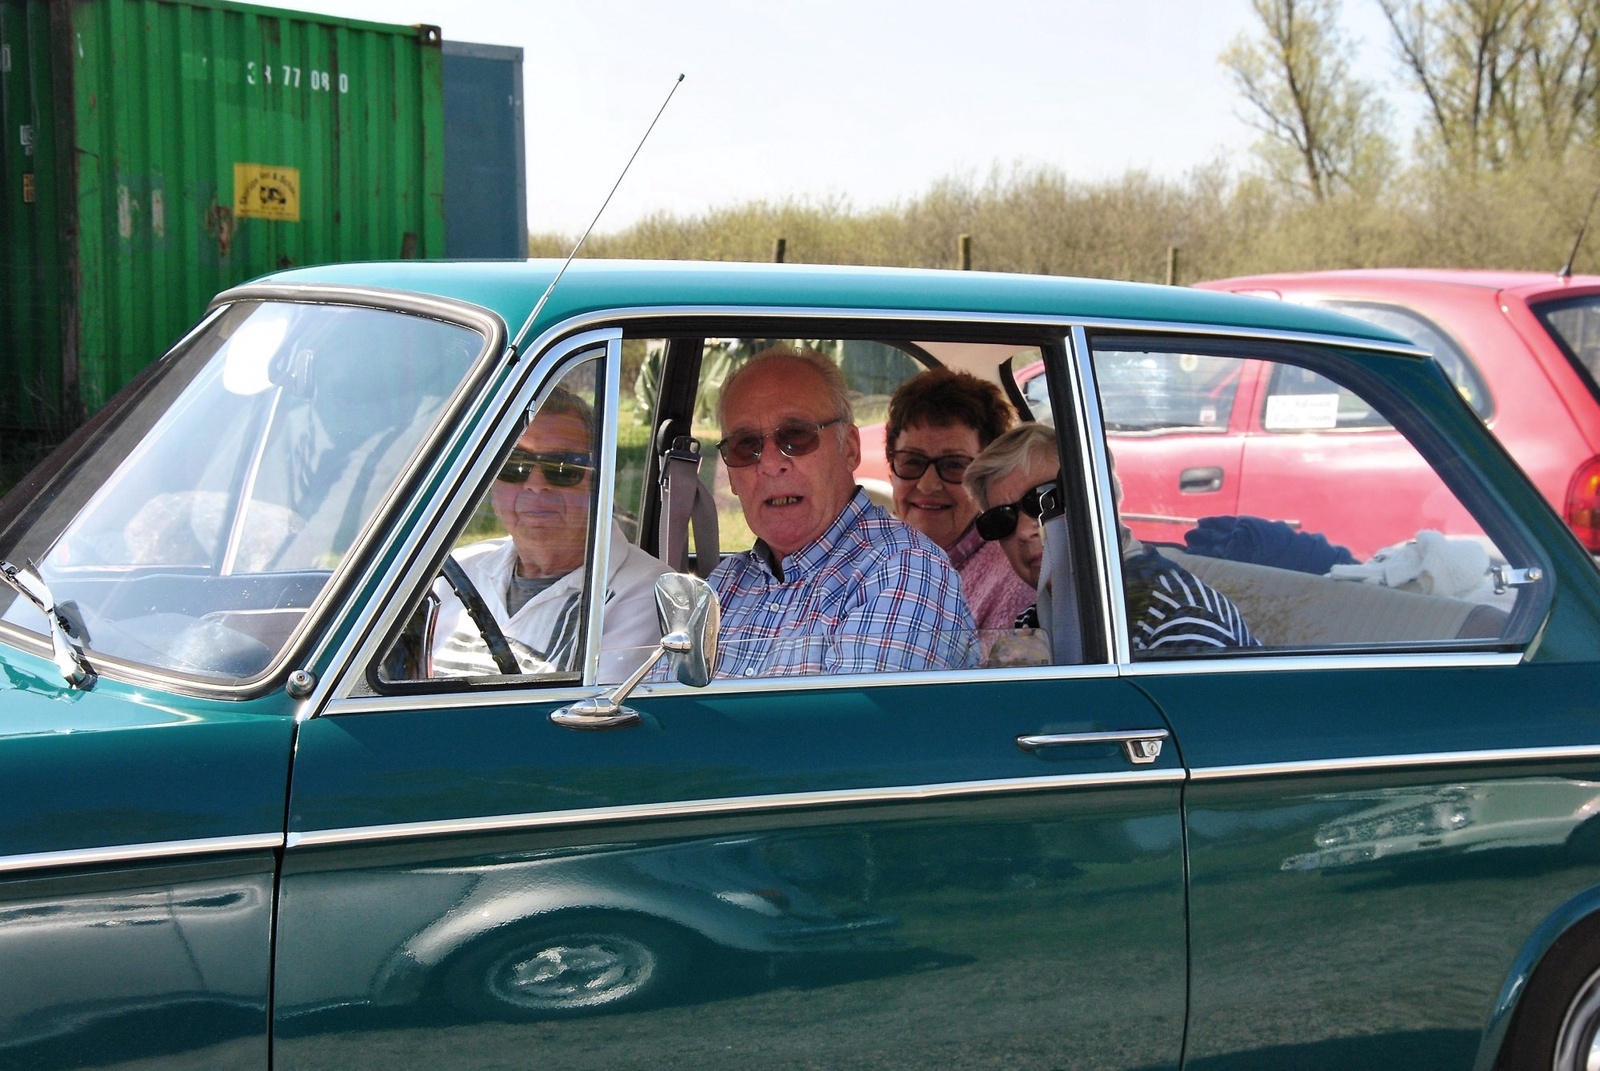 Från Dalby har Lennart Feldt och kamraten Alf Cyrén och deras livskamrater Ena Larssson och Anna-Lisa Cyrén åkt. Bilen är en BMW 1600 från 1964. Foto: Caroline Stenbäck